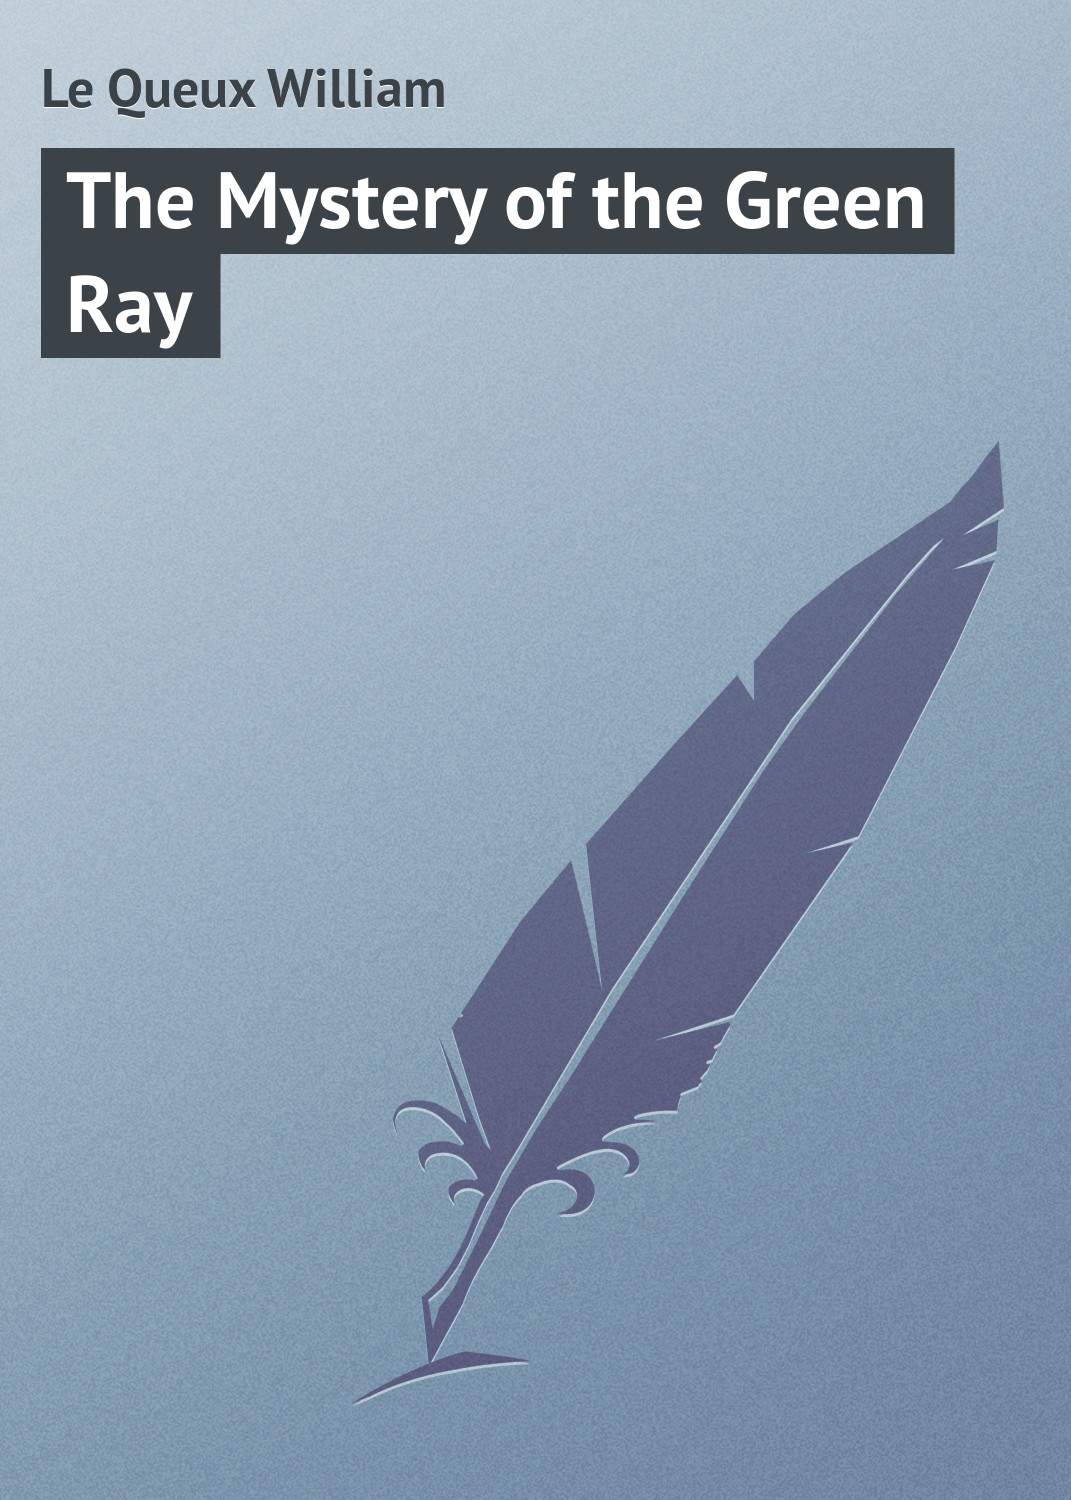 Книга The Mystery of the Green Ray из серии , созданная William Le Queux, может относится к жанру Зарубежная классика, Иностранные языки. Стоимость электронной книги The Mystery of the Green Ray с идентификатором 23152139 составляет 5.99 руб.